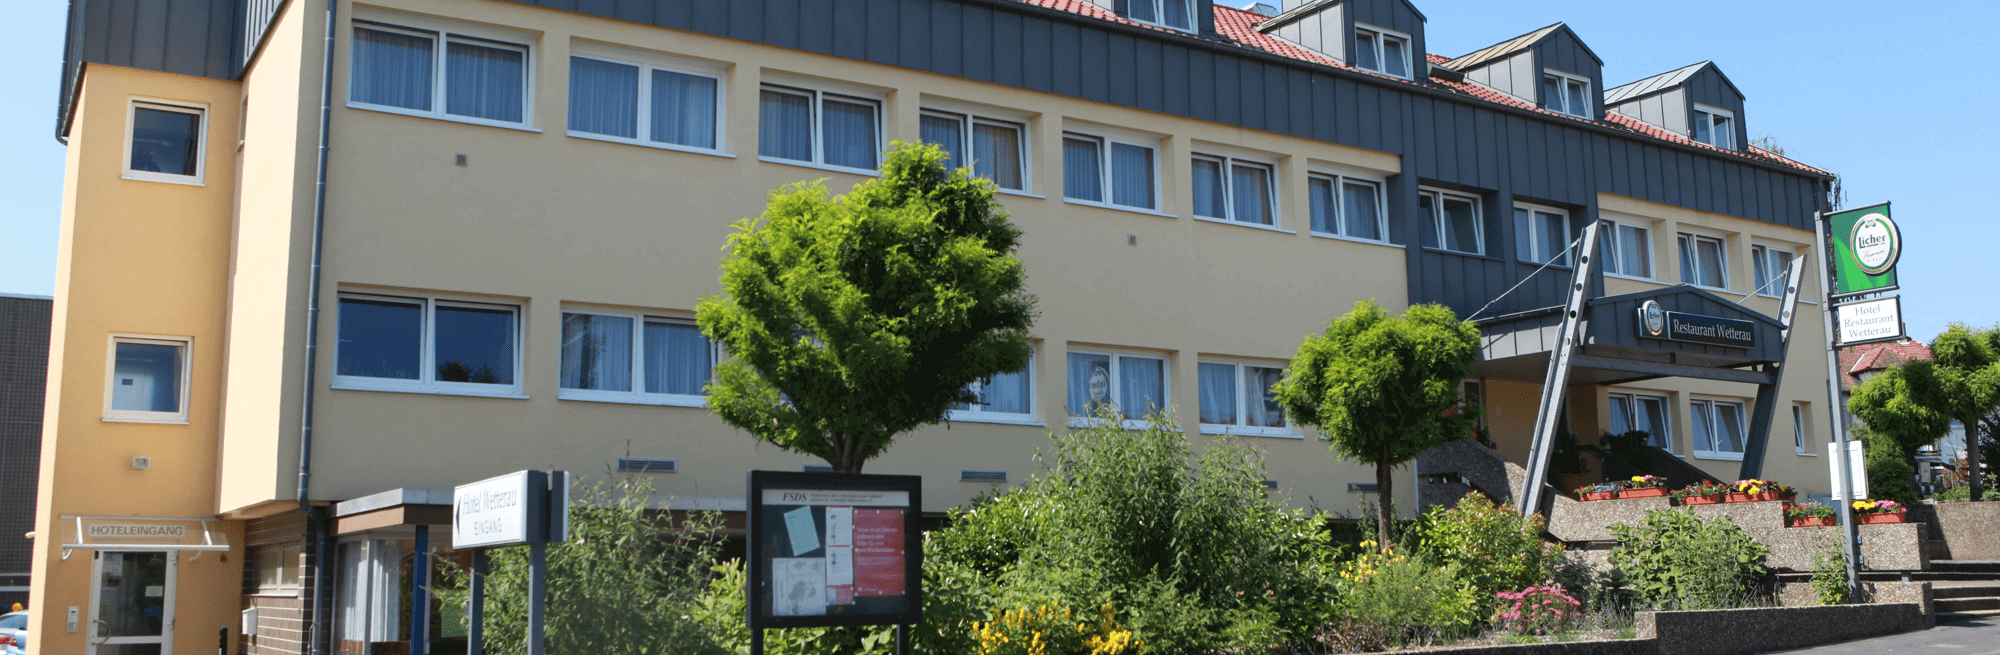 Hotel & Restaurant Wetterau in Wölfersheim bei Friedberg